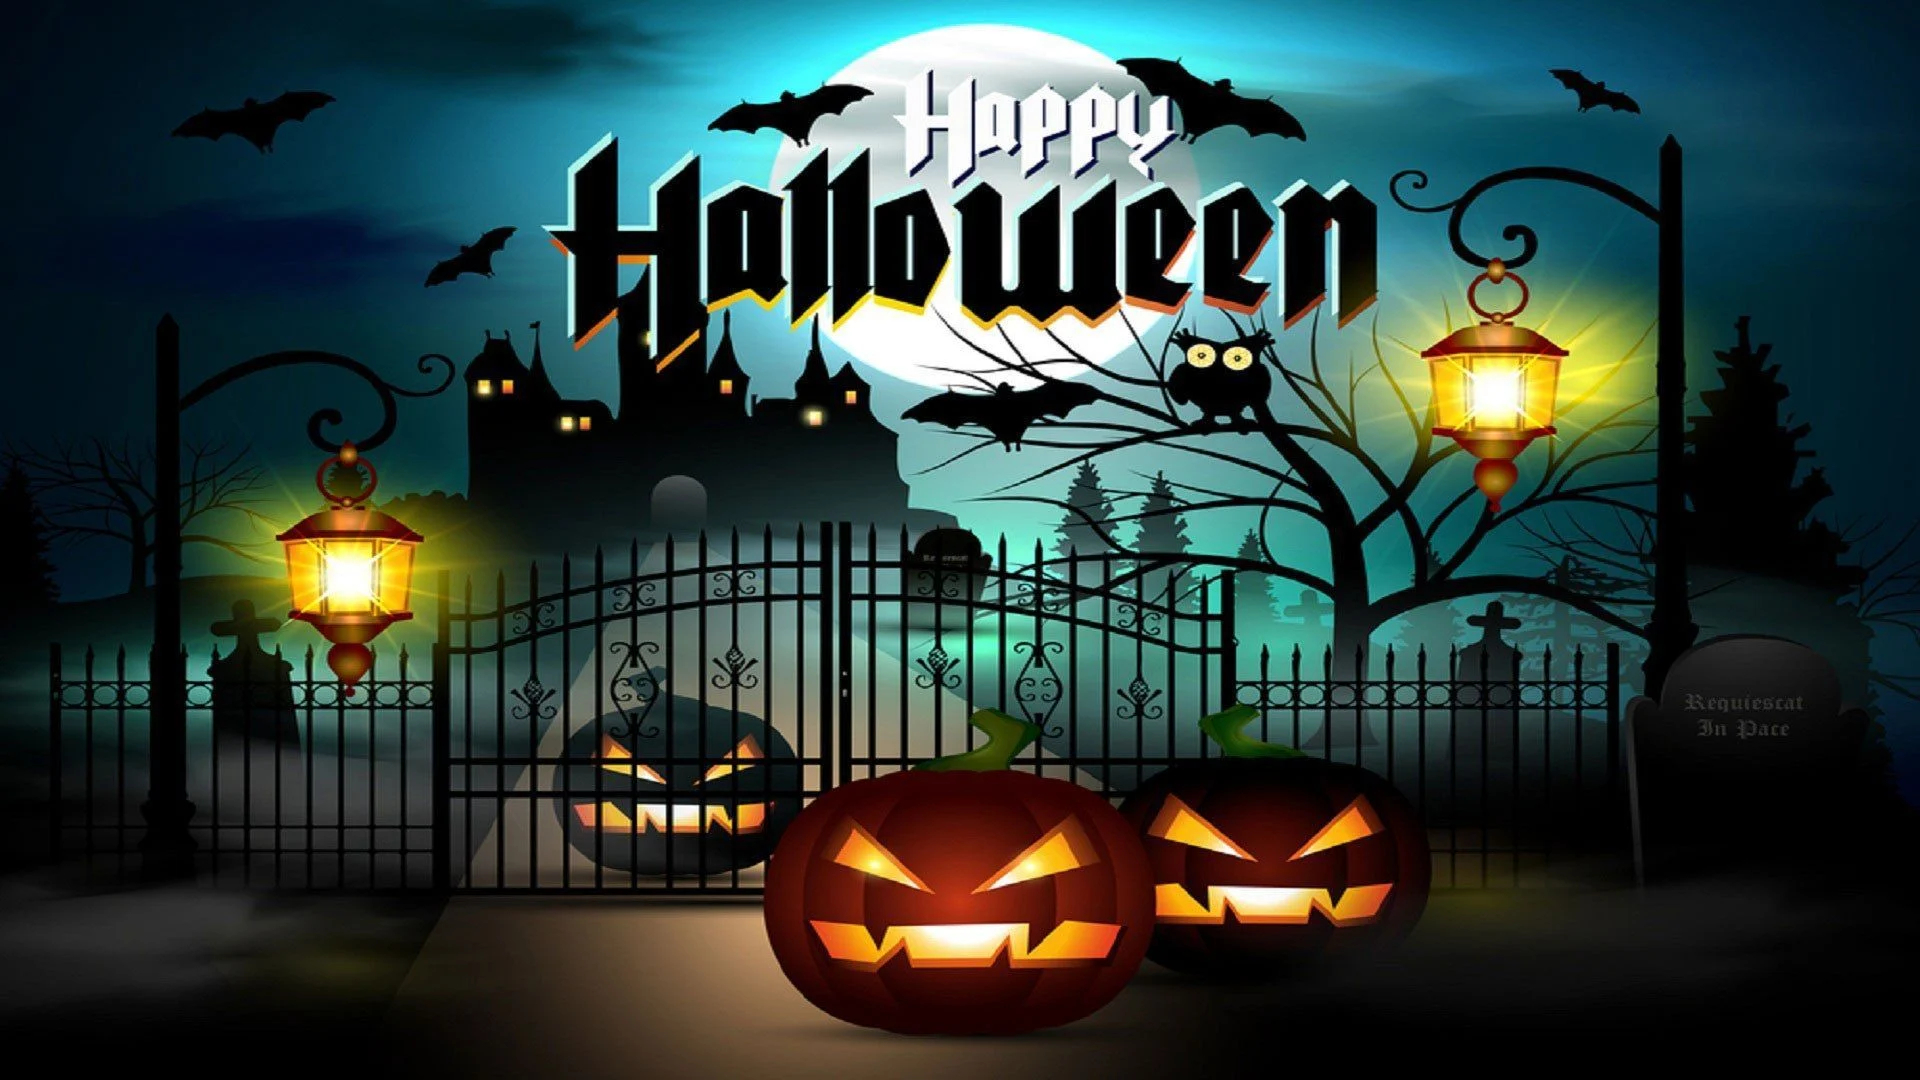 1920x1080 Happy Halloween HD Wallpapers Top Free Happy Halloween HD Backgrounds